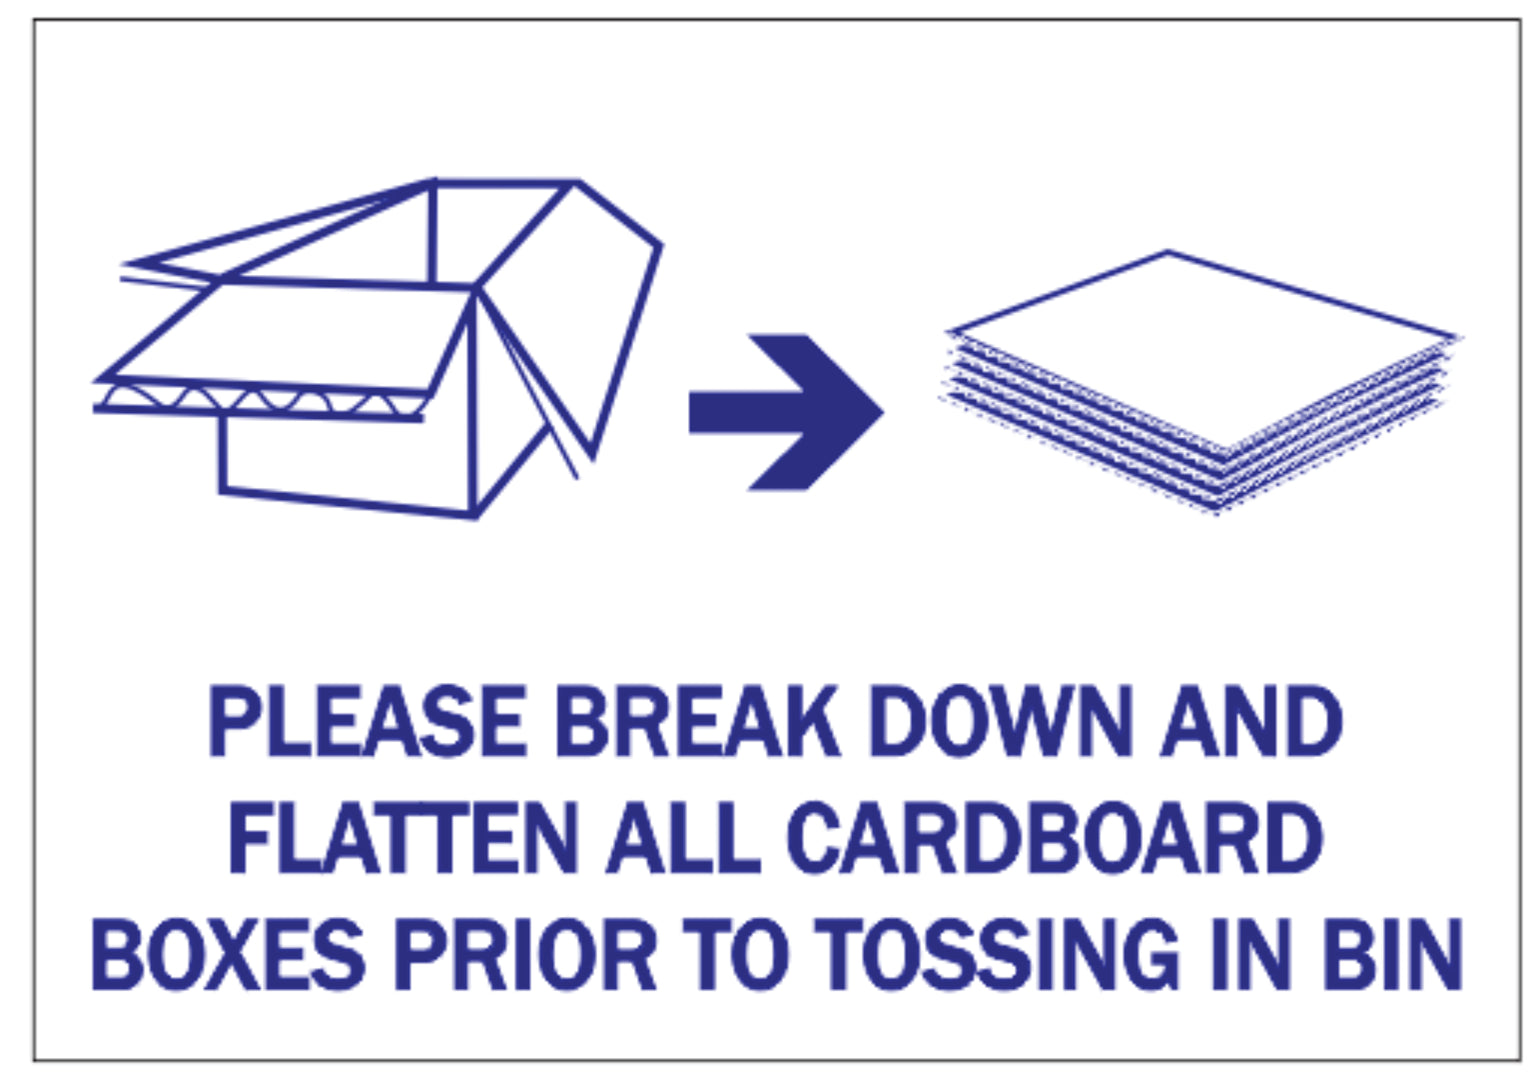 Please Break Down and Flatten All Cardboard Boxes (14